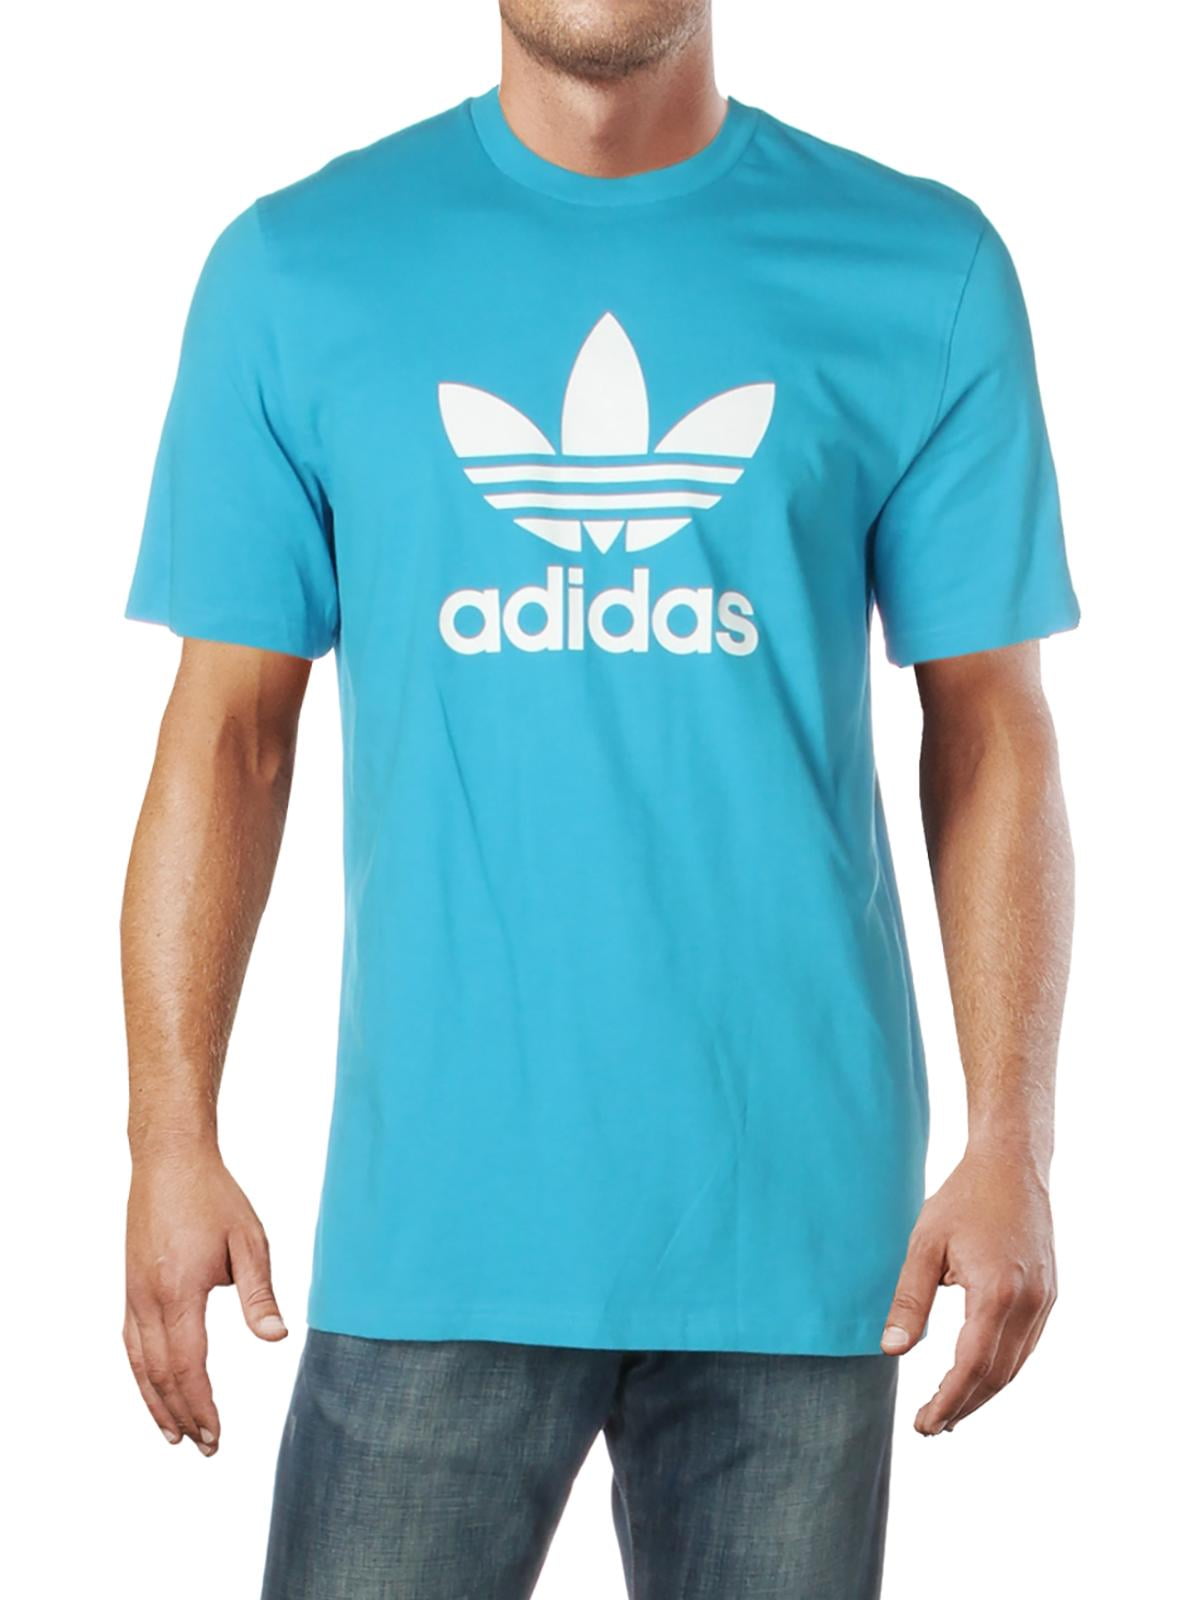 Футболка adidas Originals мужская. Адидас simple. Adidas t Shirt. Футболка adidas Moscow Trefoil 2.0.